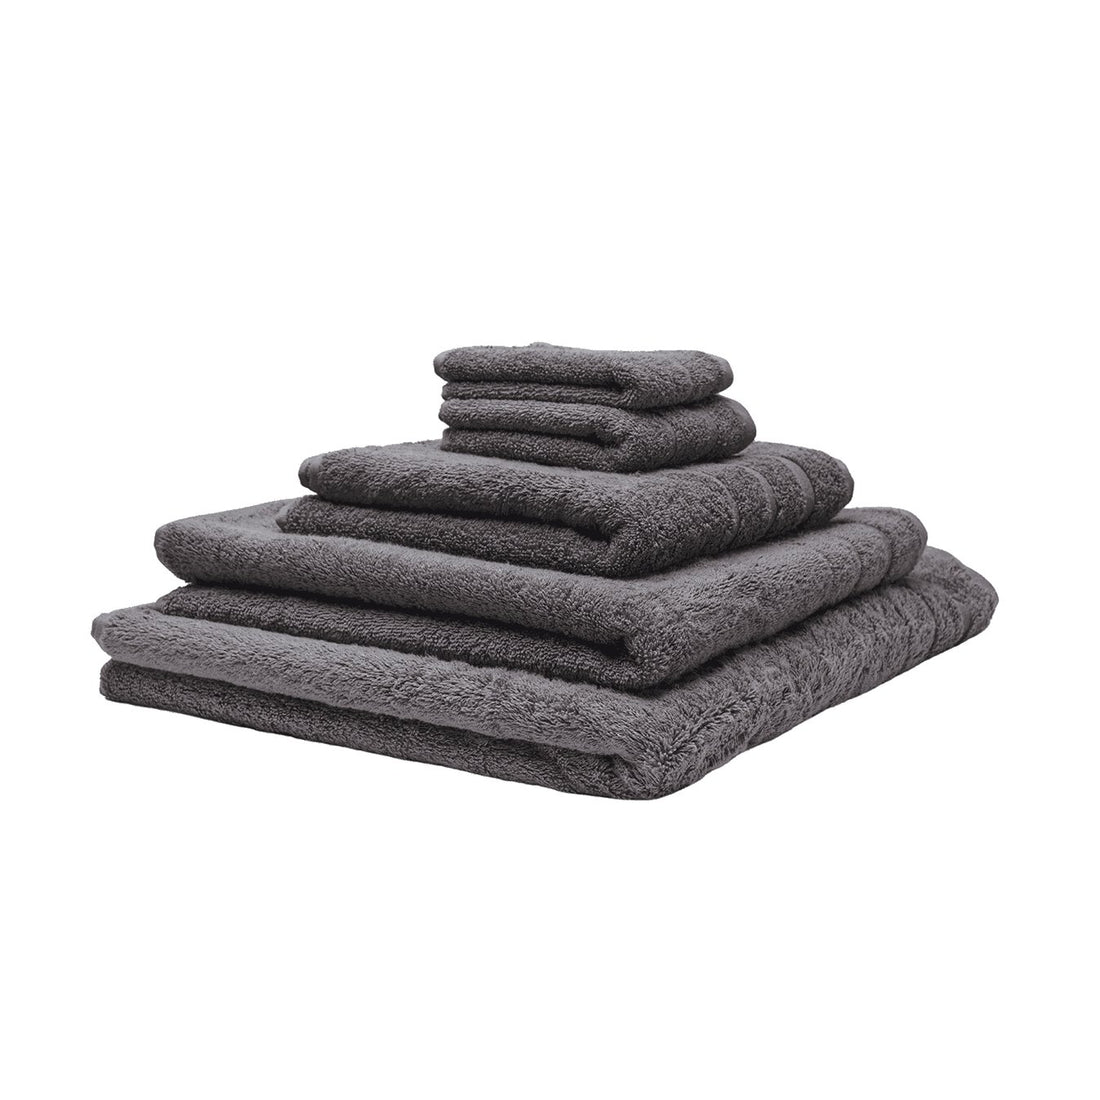 Fem økologiske håndklæder stablet oven på hinanden. Farven er grå.